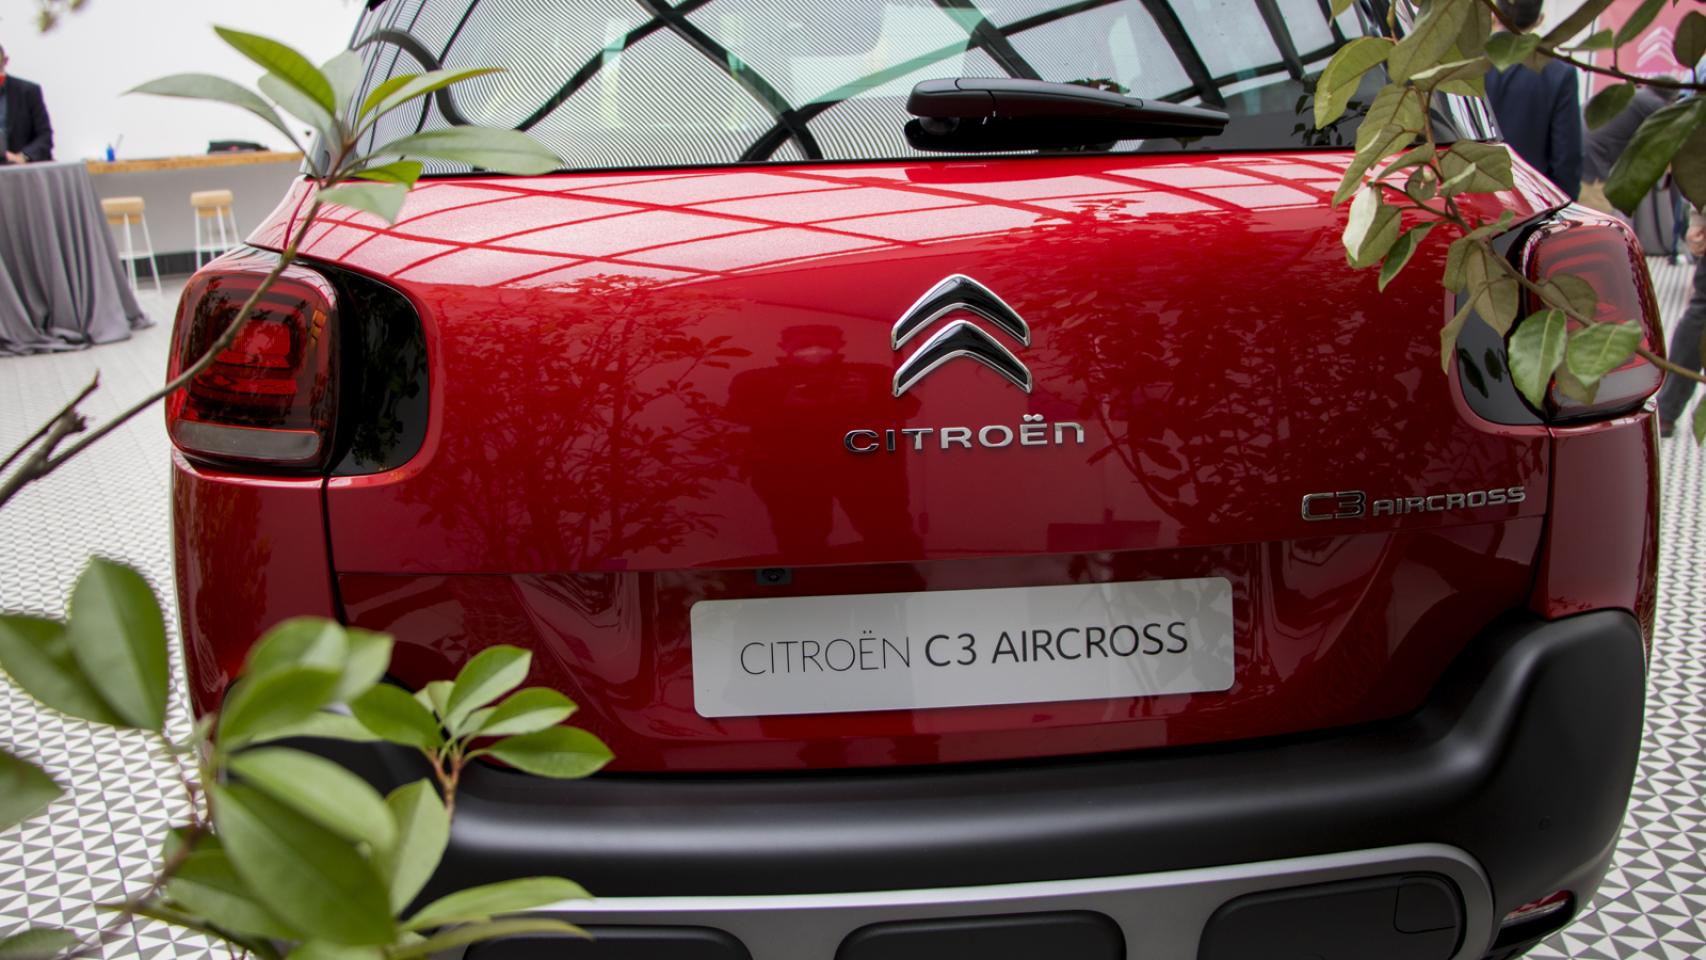 Galería de fotos del nuevo Citroën C3 Aircross 2021